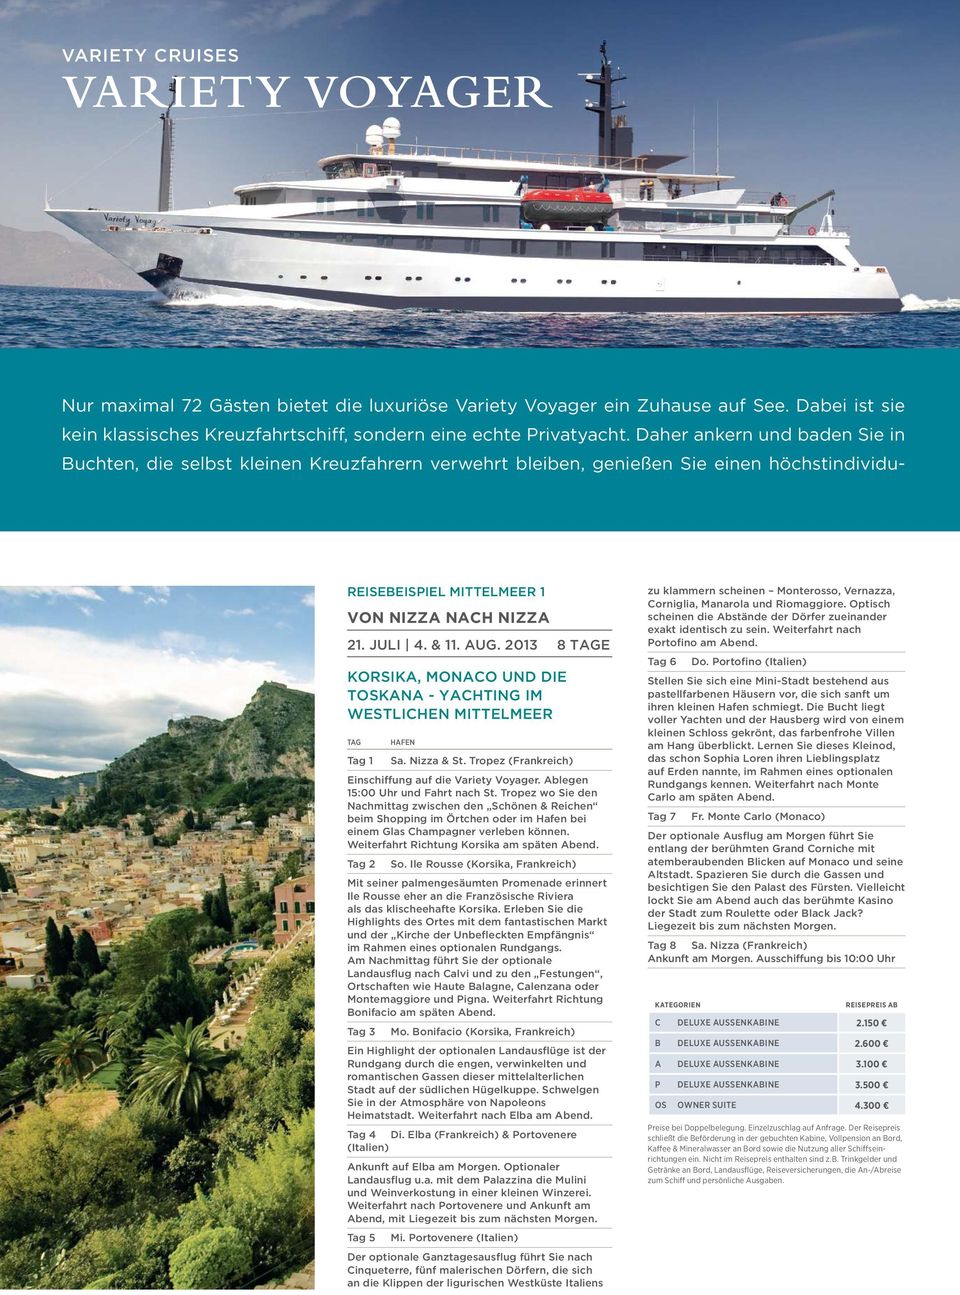 2013 8 Tage Korsika, Monaco und die Toskana - Yachting im westlichen Mittelmeer Tag Hafen Tag 1 Sa. Nizza & St. Tropez (Frankreich) Einschiffung auf die Variety Voyager.